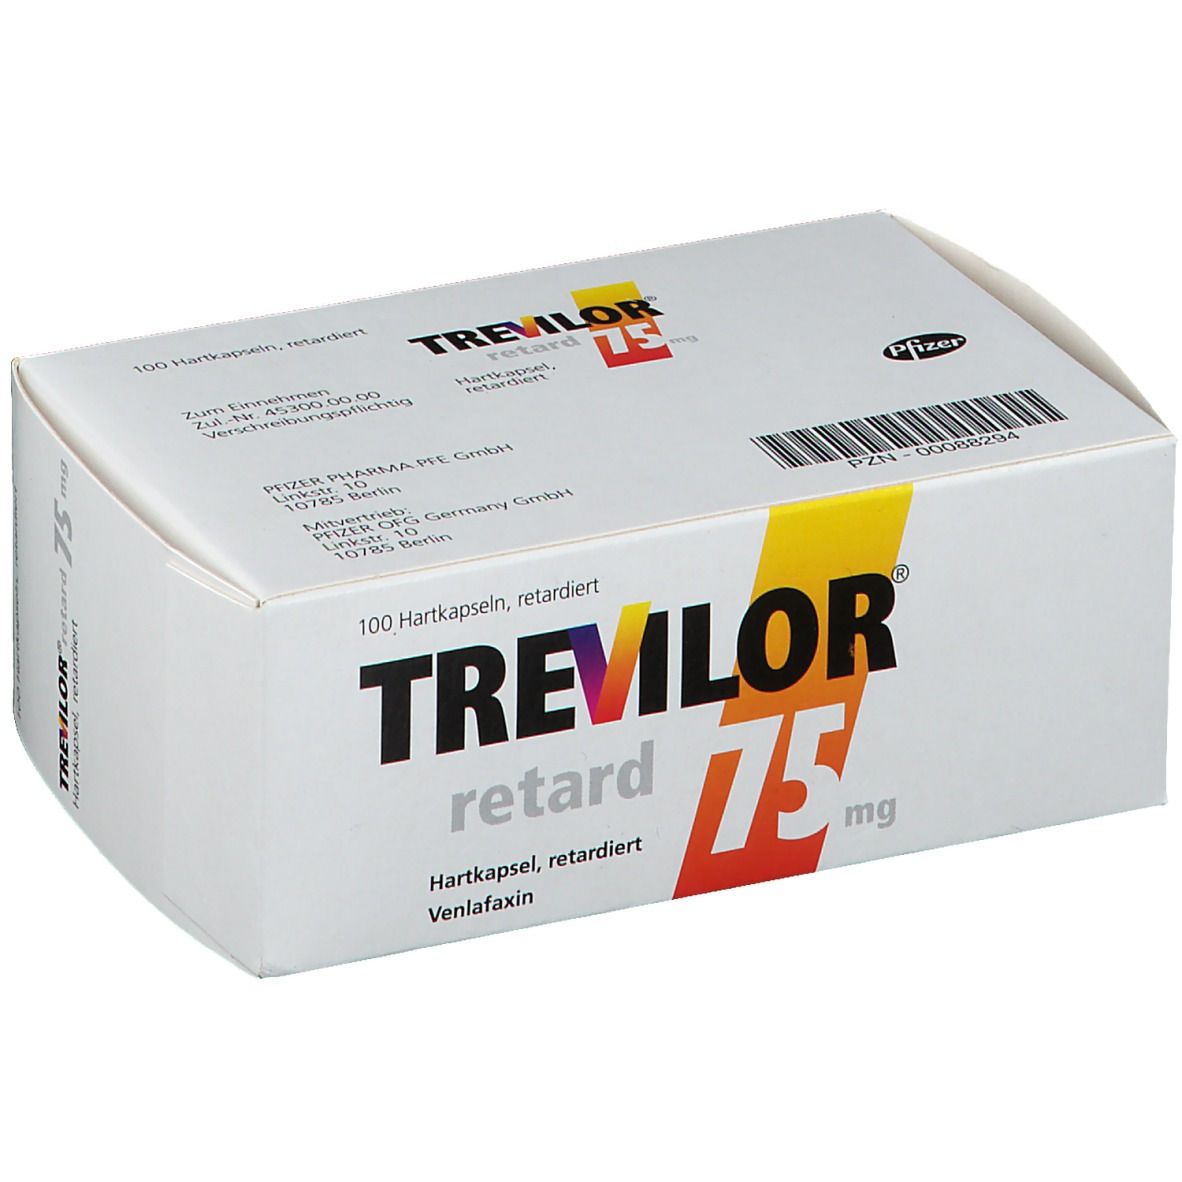 Trevilor® retard 75 mg